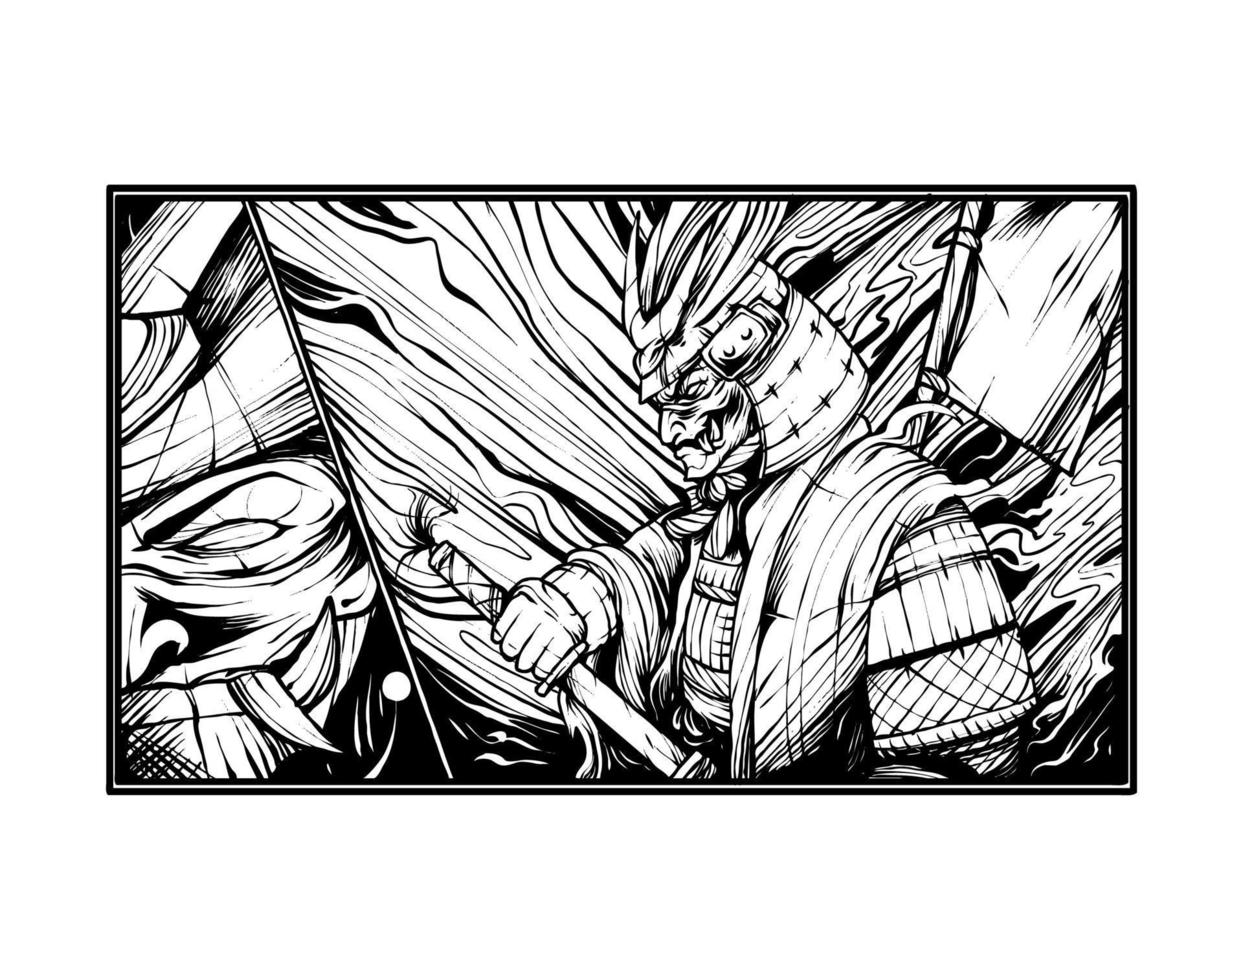 illustrazione di guerriero samurai vettore